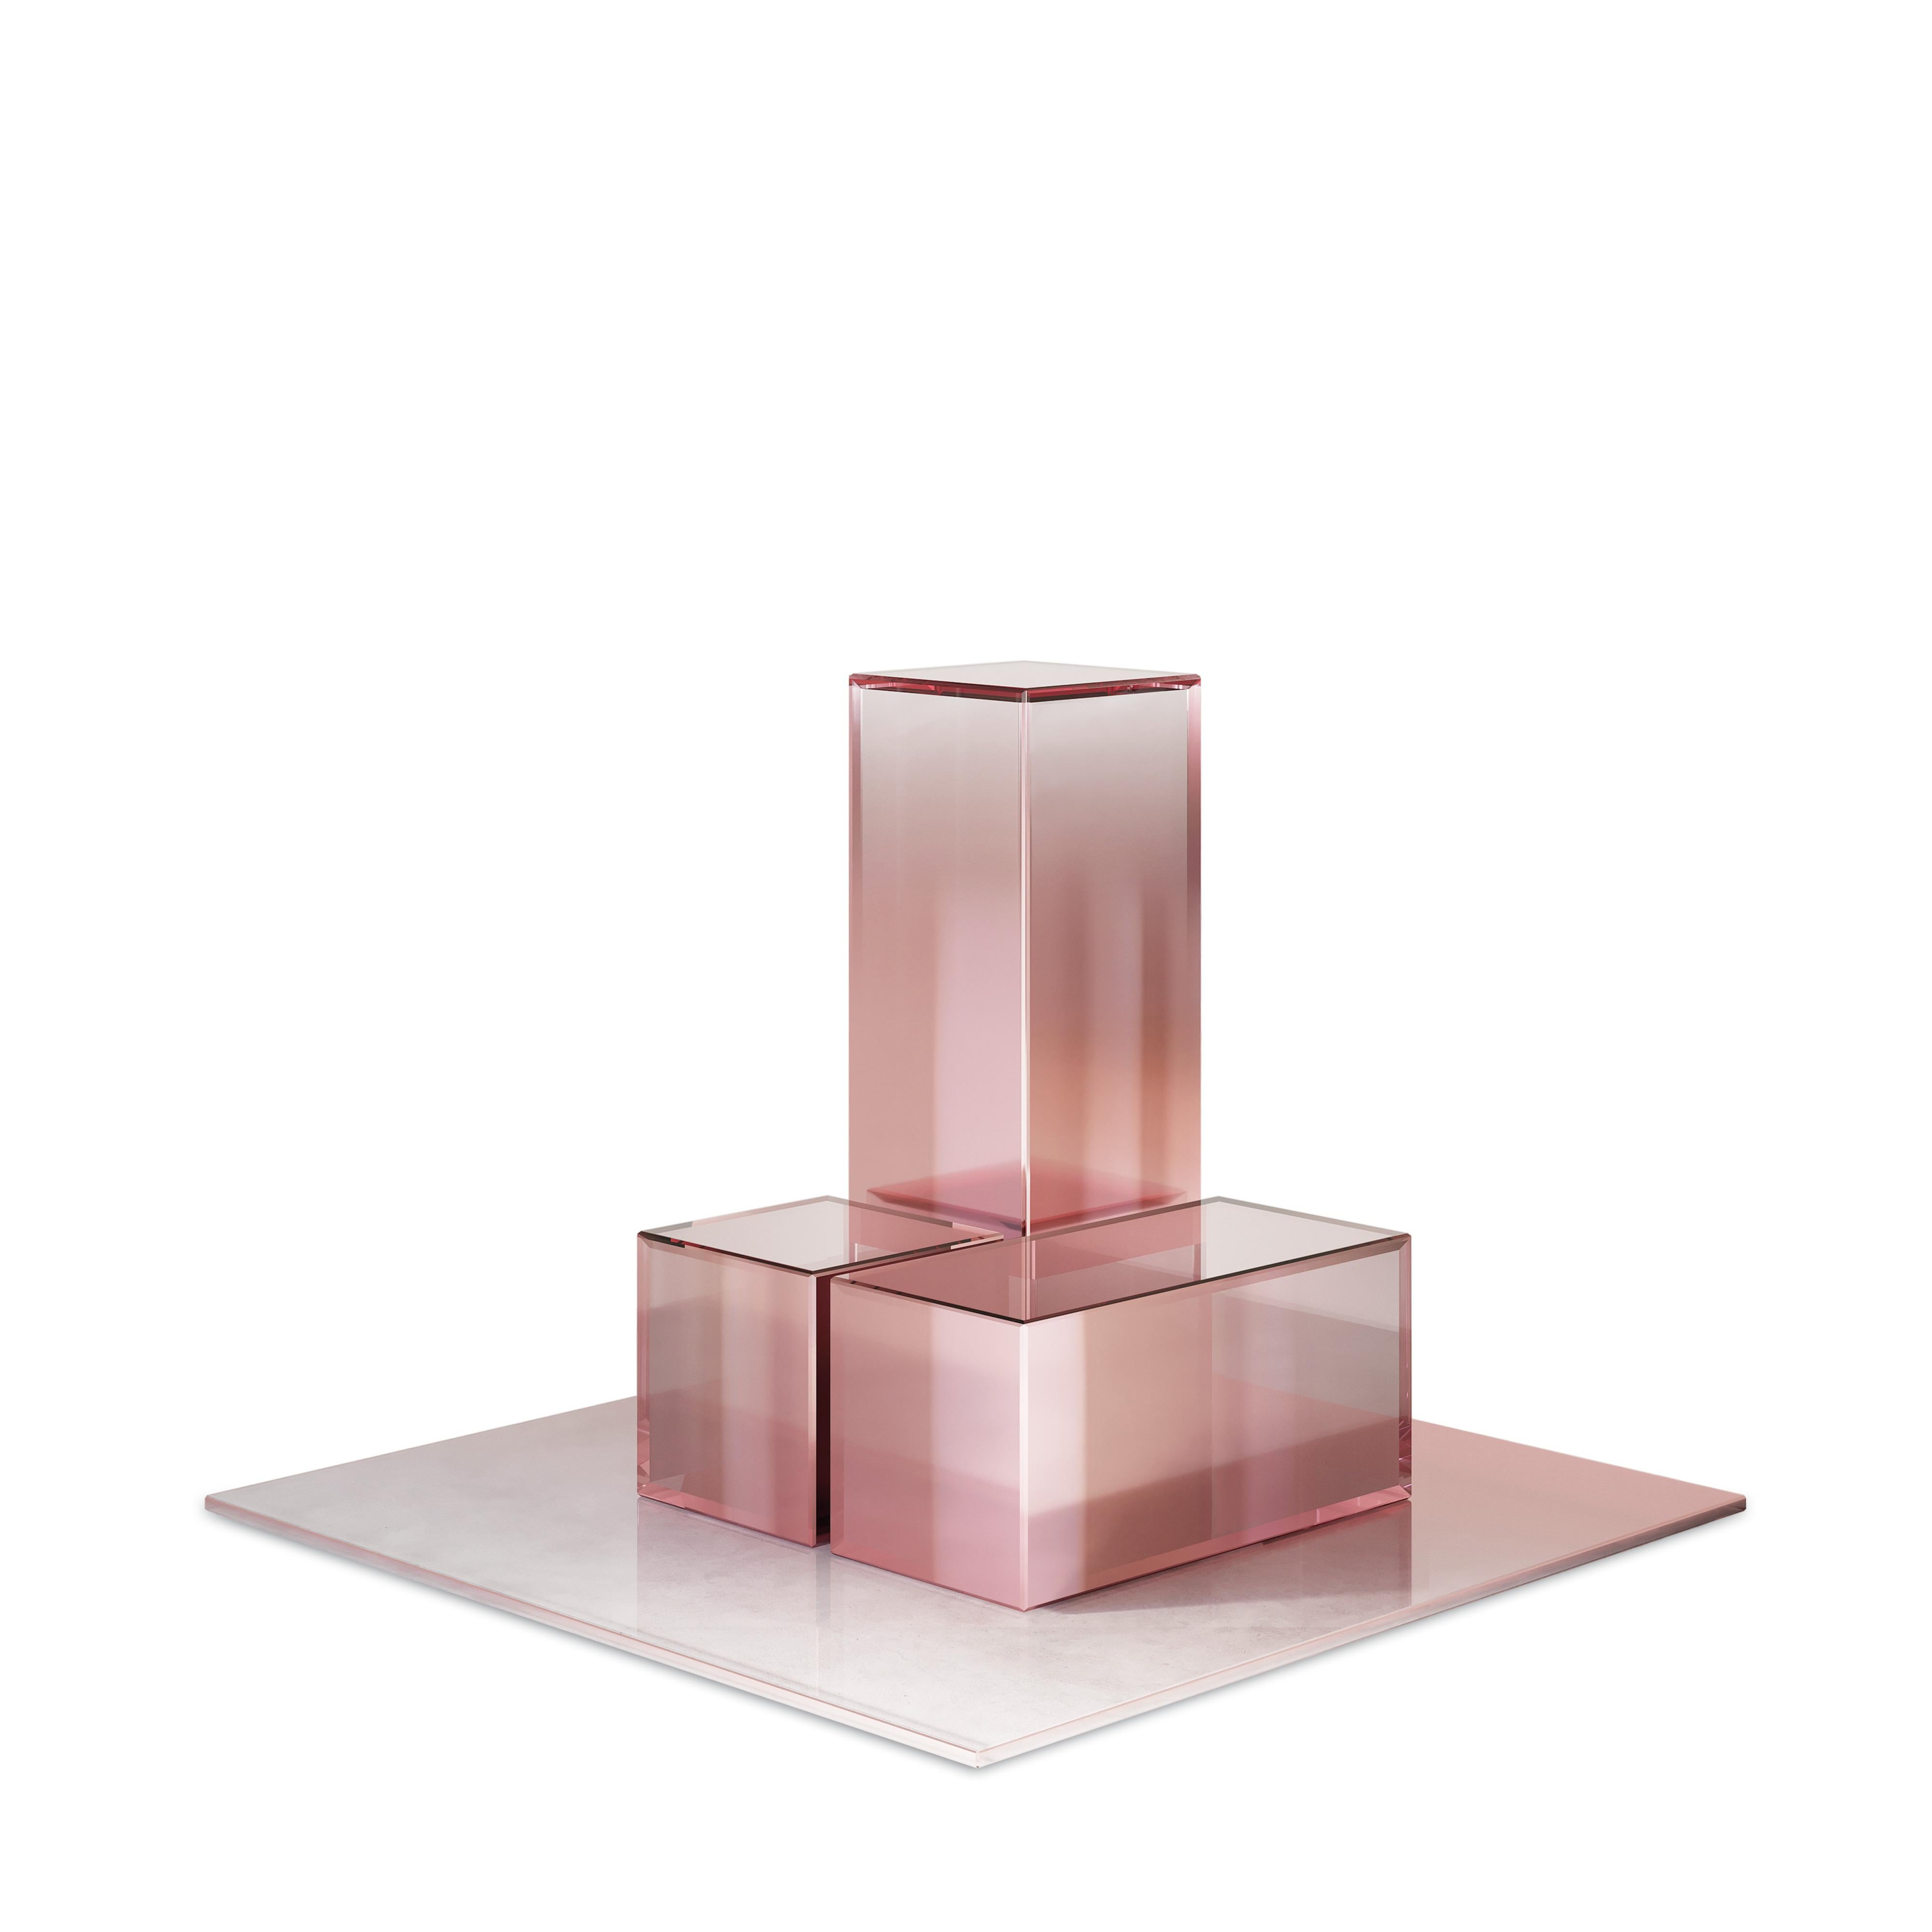 Ensemble de 3 boîtes décoratives Dazzle de Formaminima
Exemplaire unique.
Dimensions : Boîte 1 : H 5 x L 10,5 x P 5 cm.
Boîte 2 : H 5 x L 5 x P 5 cm.
Boîte 3 : H 15 x L 5 x P 5 cm.
Plaque : H 0,3 x L 21 x P 21 cm.
Matériaux : Verre de cristal rose